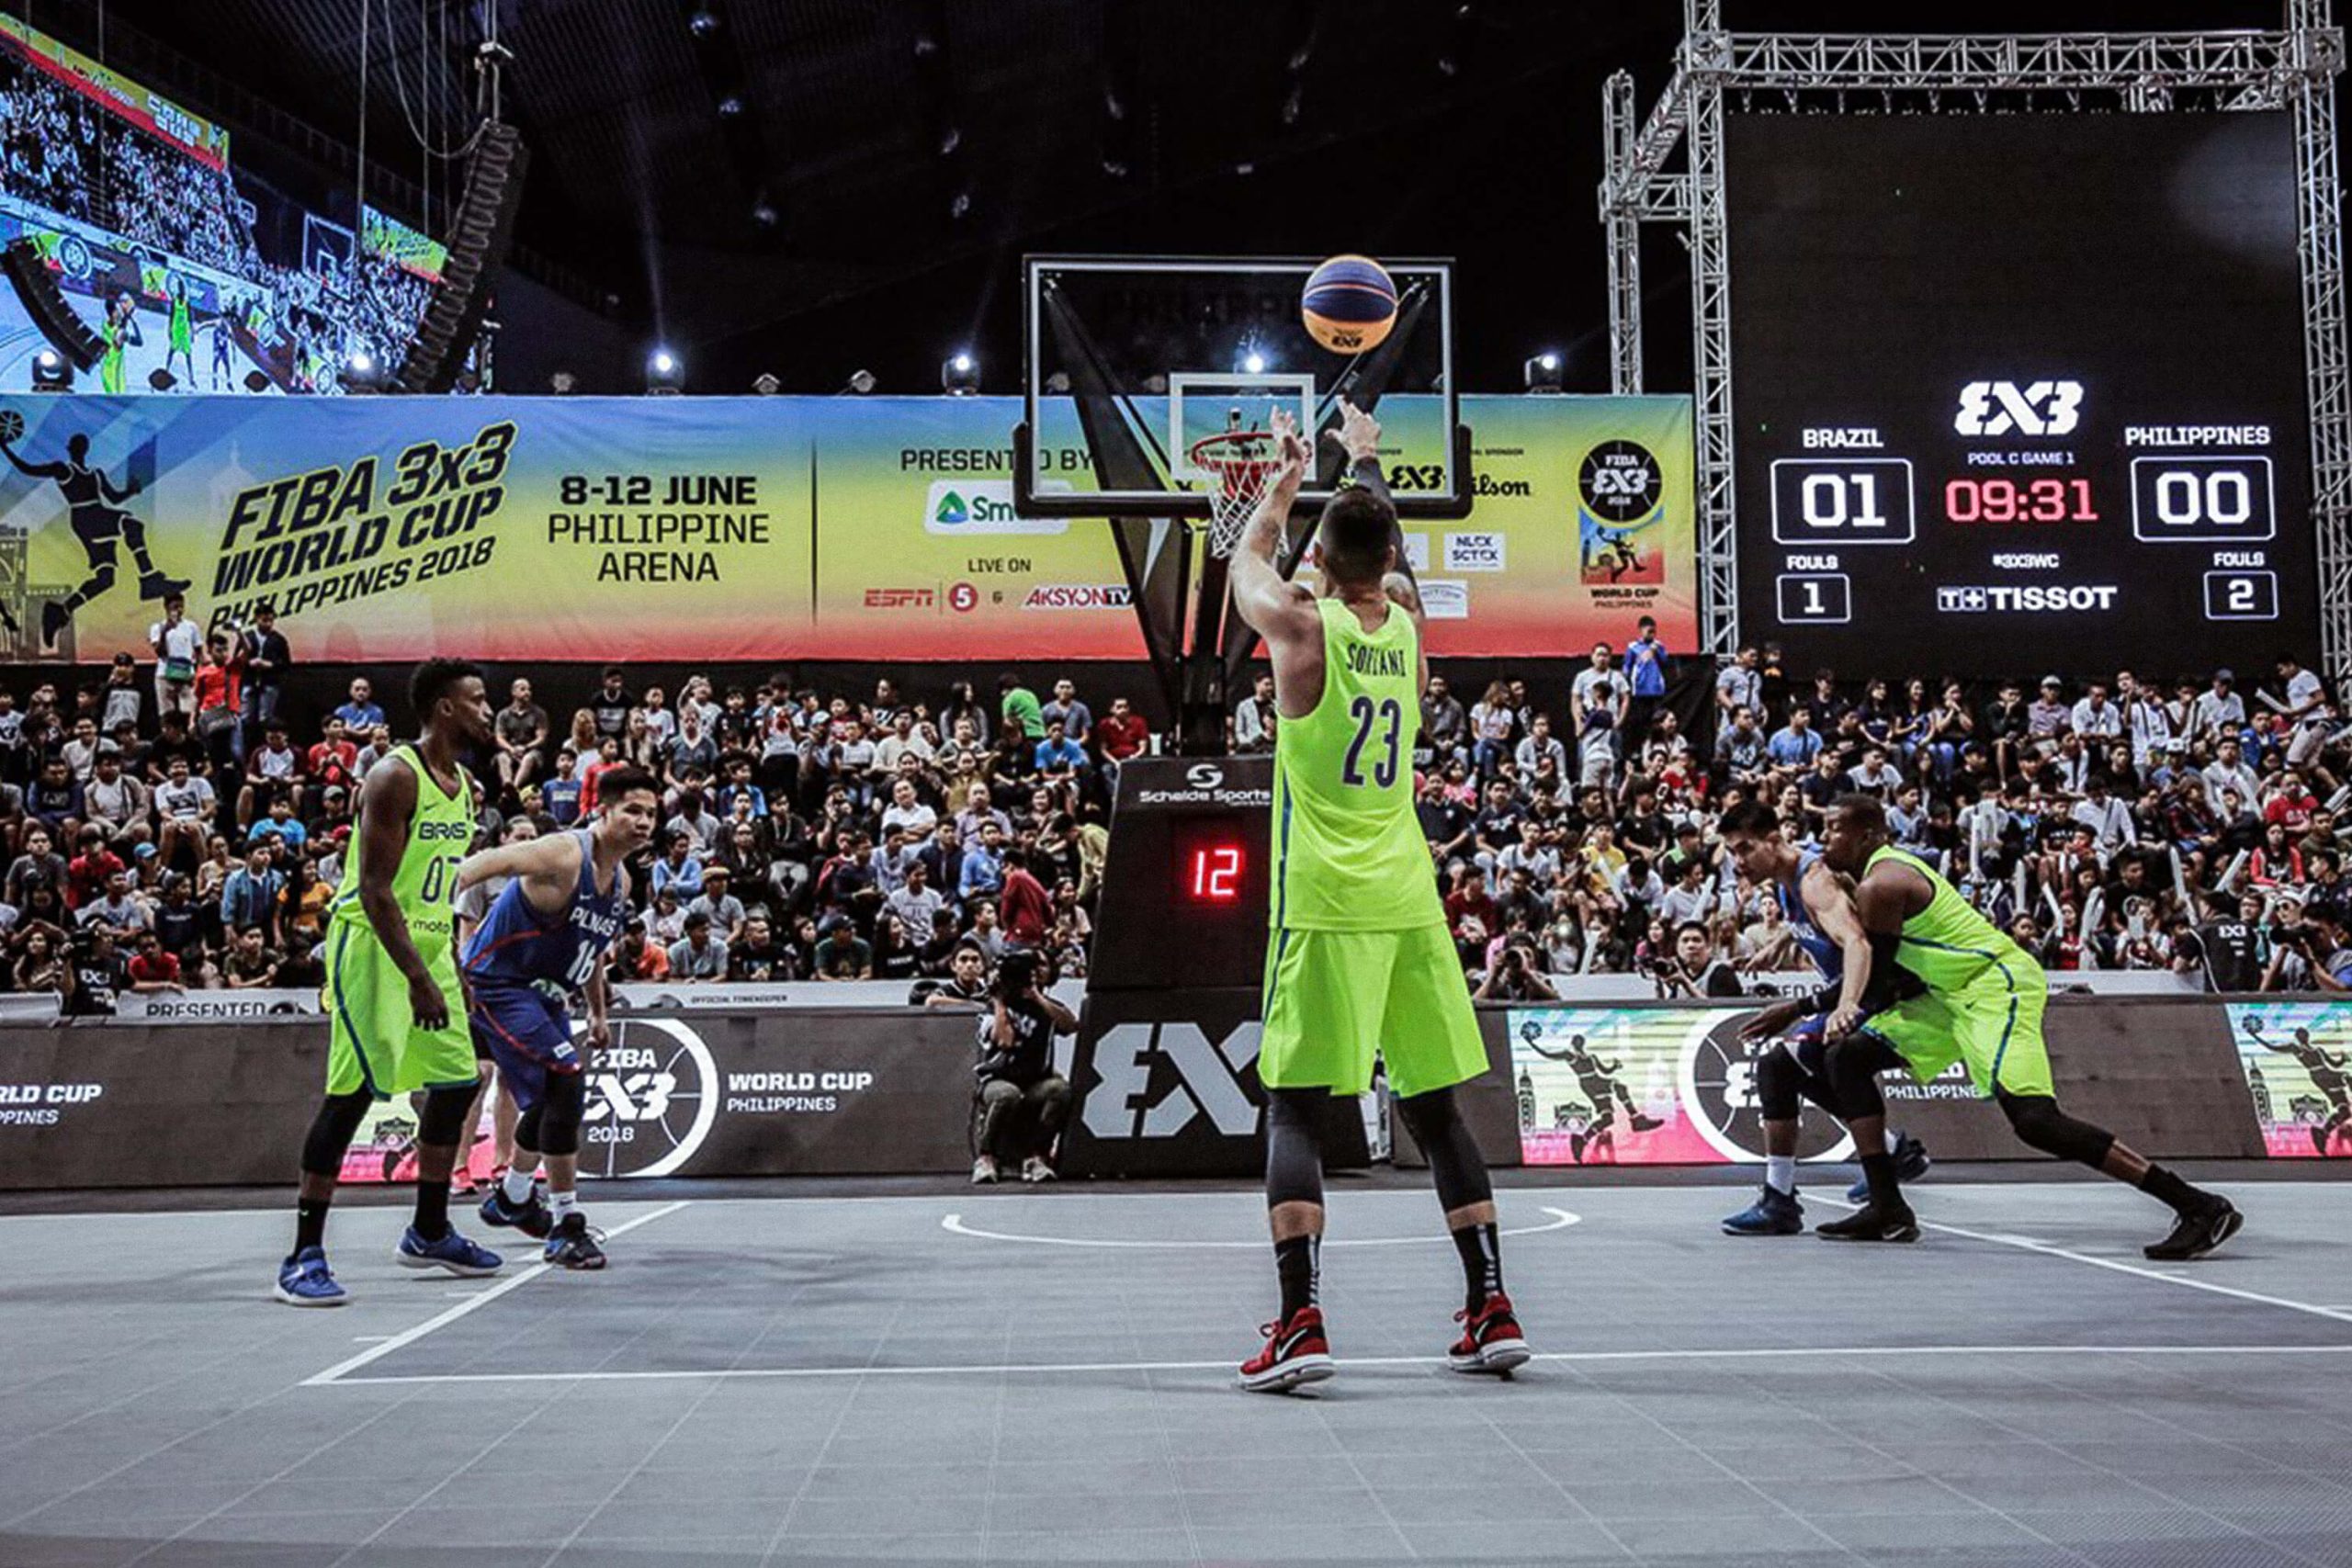 FIBA define jogos de basquete do Brasil para o período da tarde nas  Olimpíadas Rio 2016 - Surto Olímpico